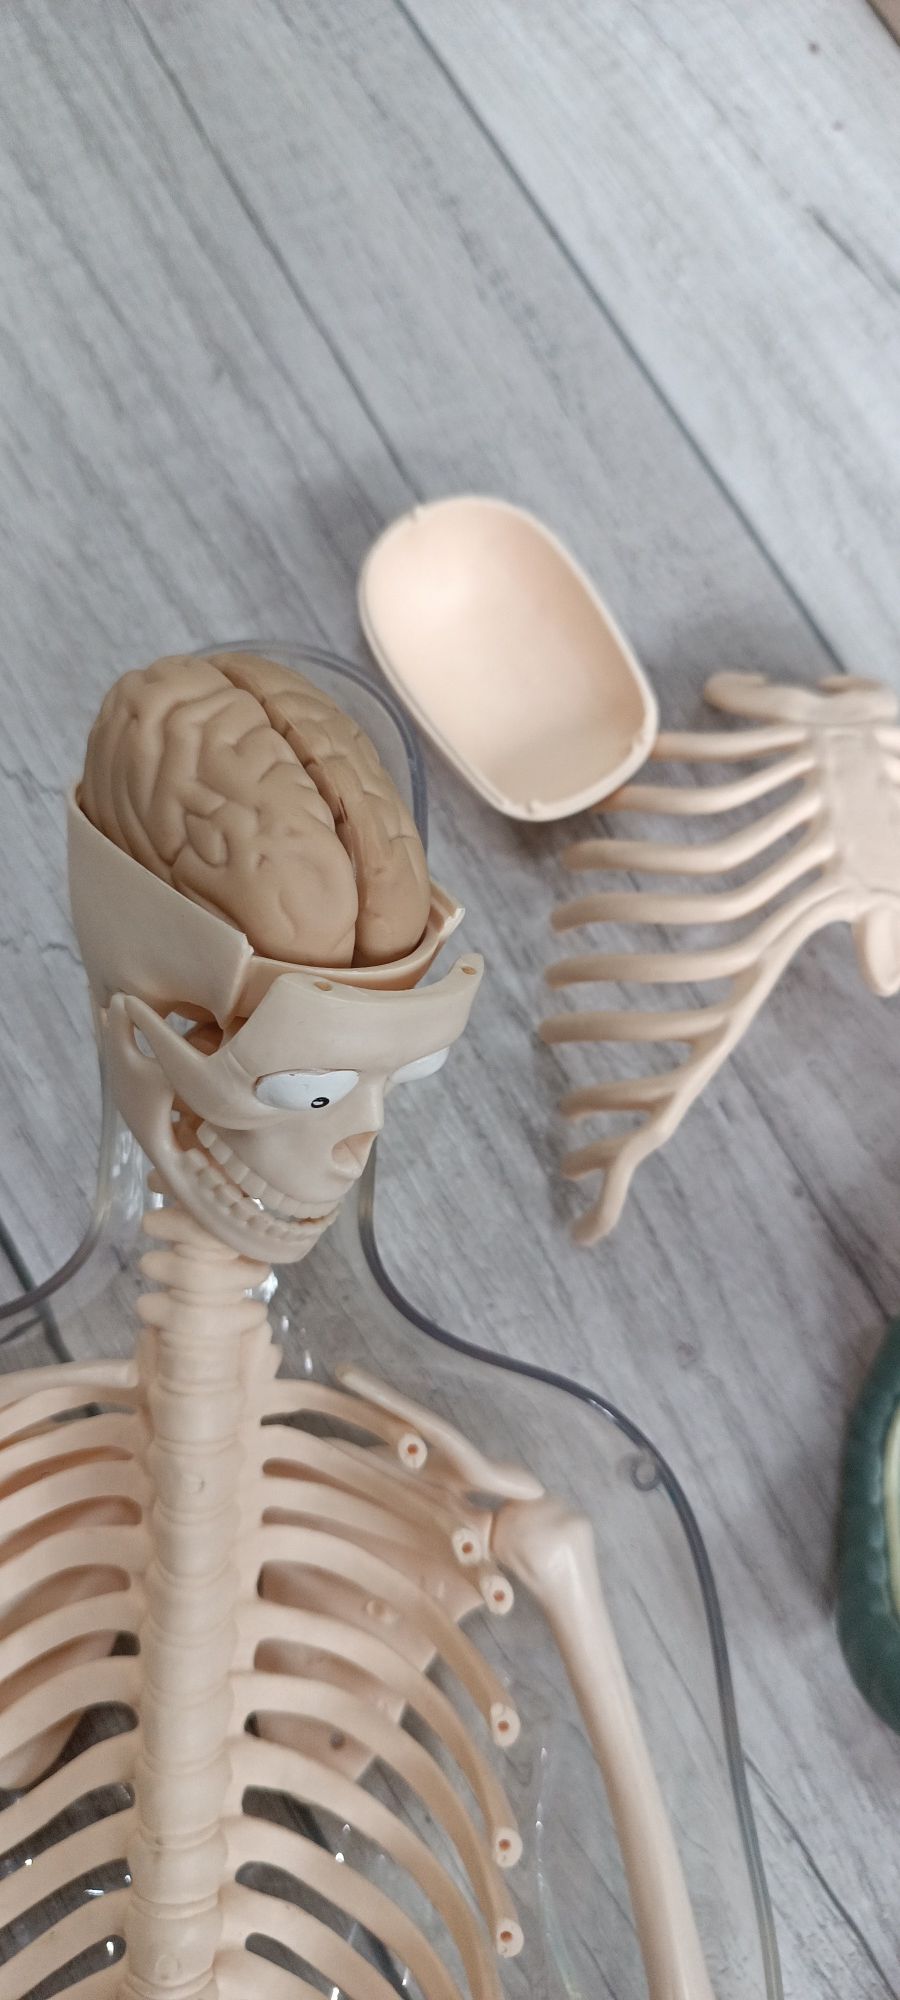 Скелет модель человека с органами